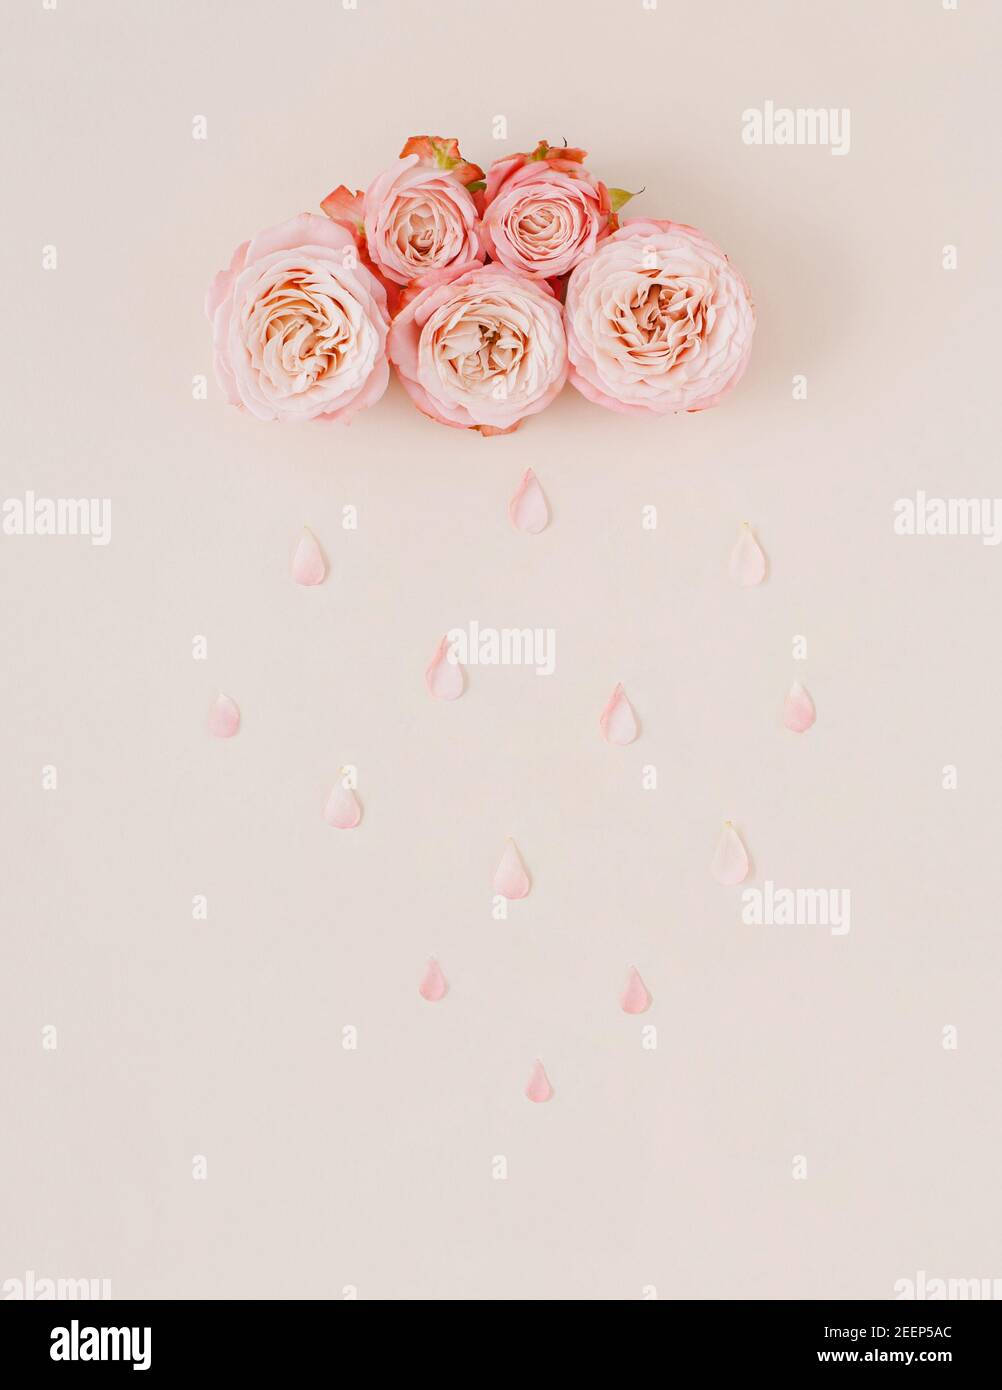 Rosarosen Auf Einem Rosa Hintergrund Mit Wassertropfen - Lizenzfreie Abbildung Wallpaper